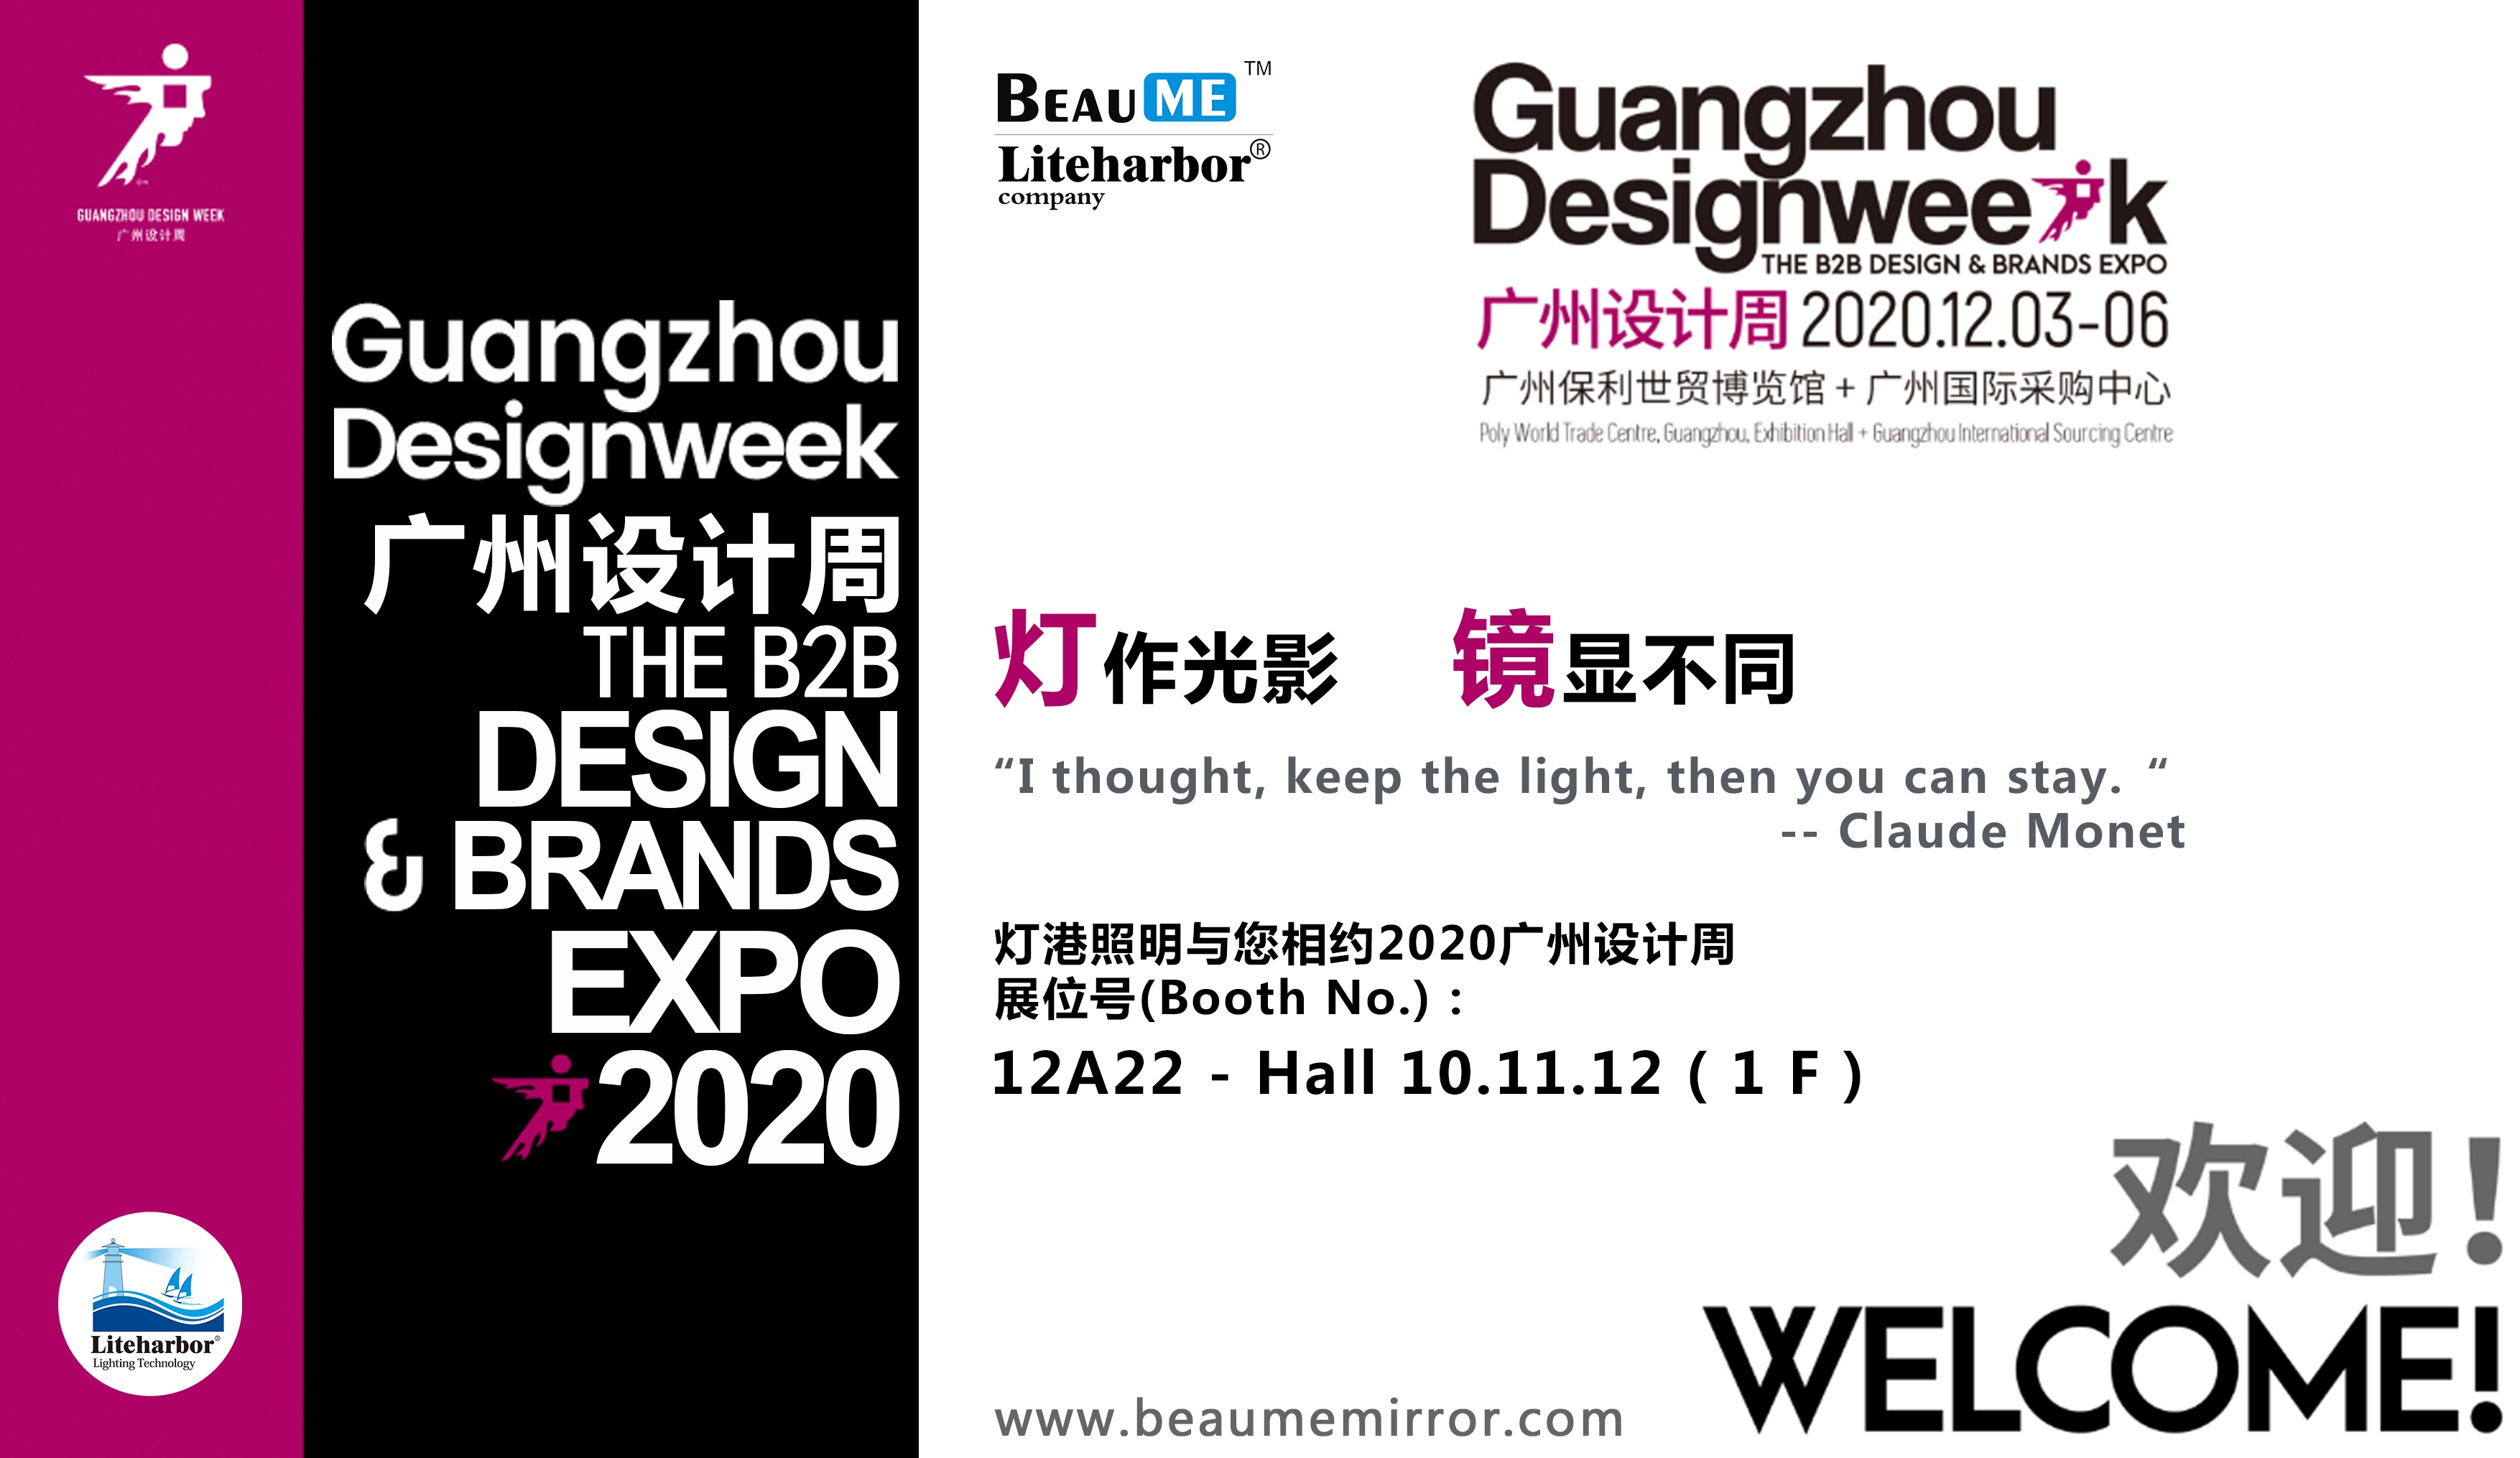 GUANGZHOU DESIGNWEEK THE B2B DESIGN & BRANDS EXPO 2020